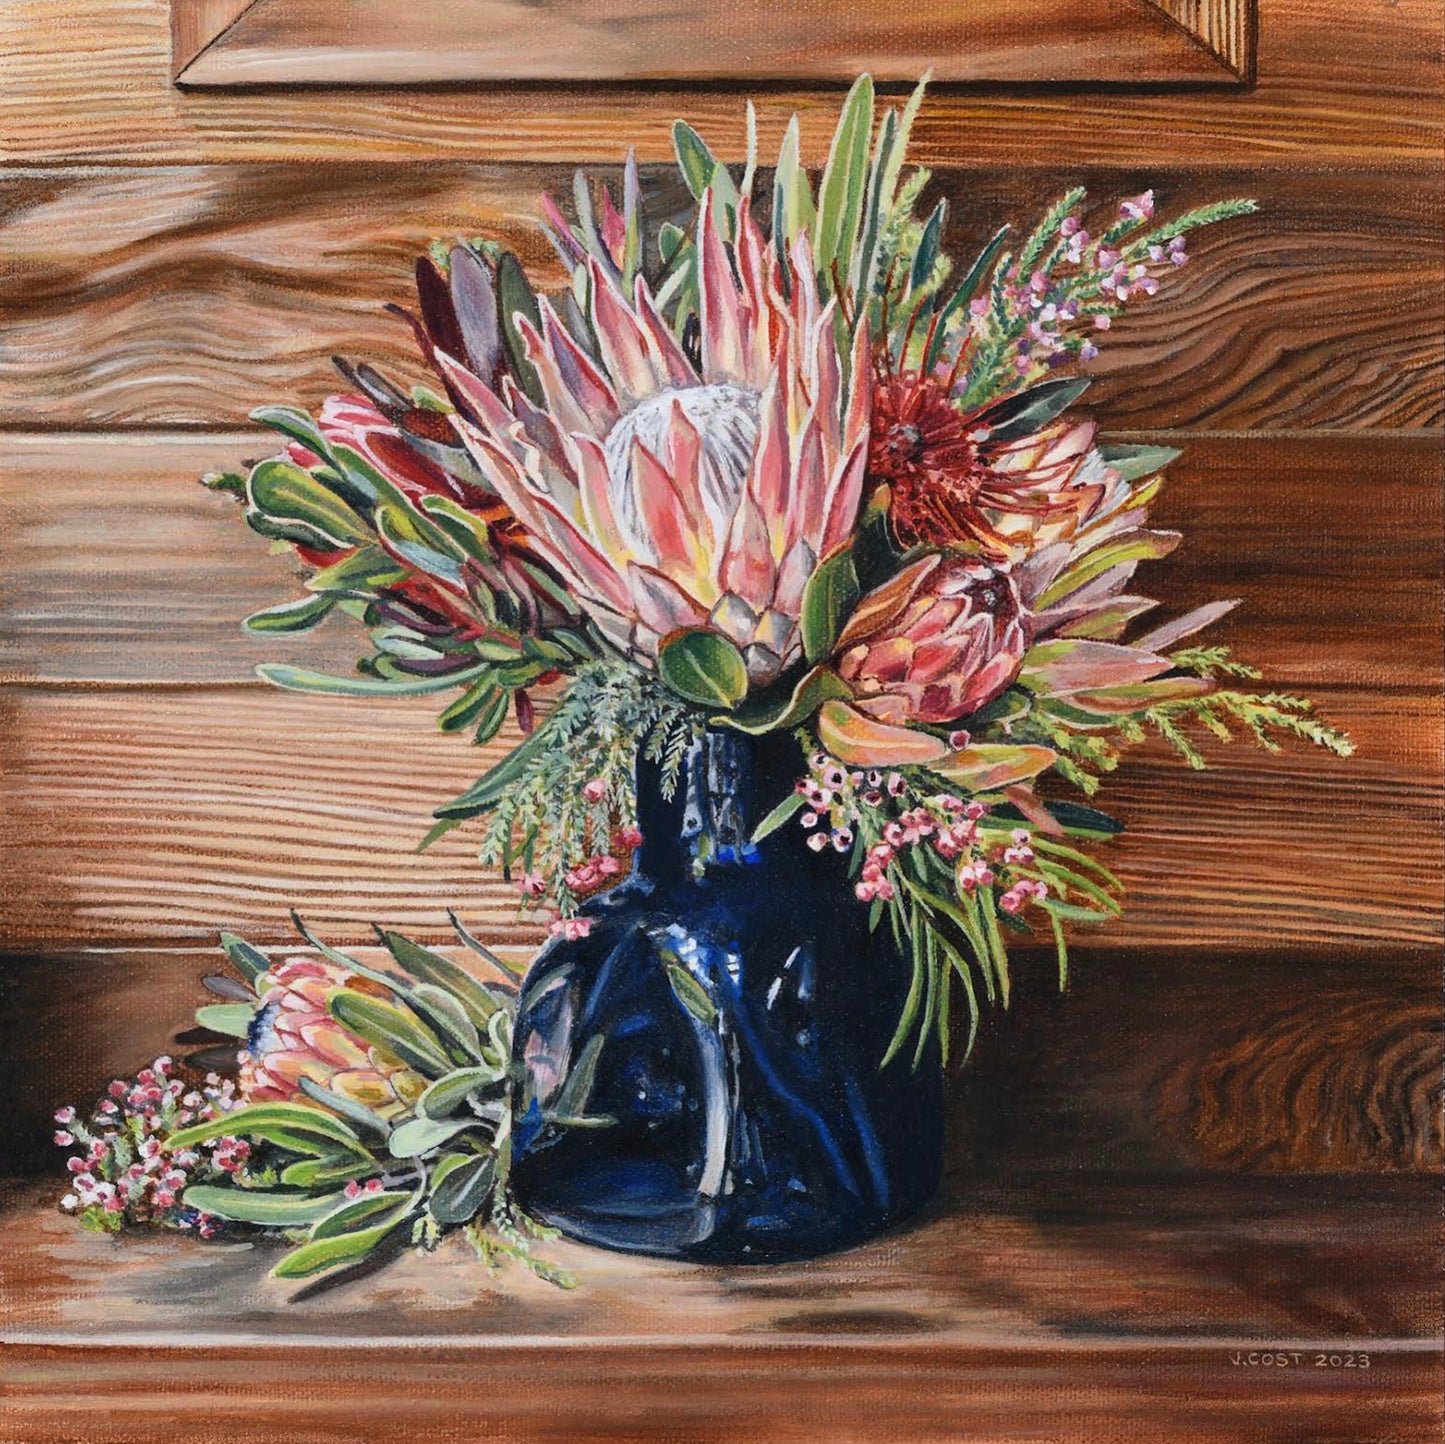 Kēōkea Bouquet, Limited edition, unstretched canvas giclée by Julia Allisson Cost